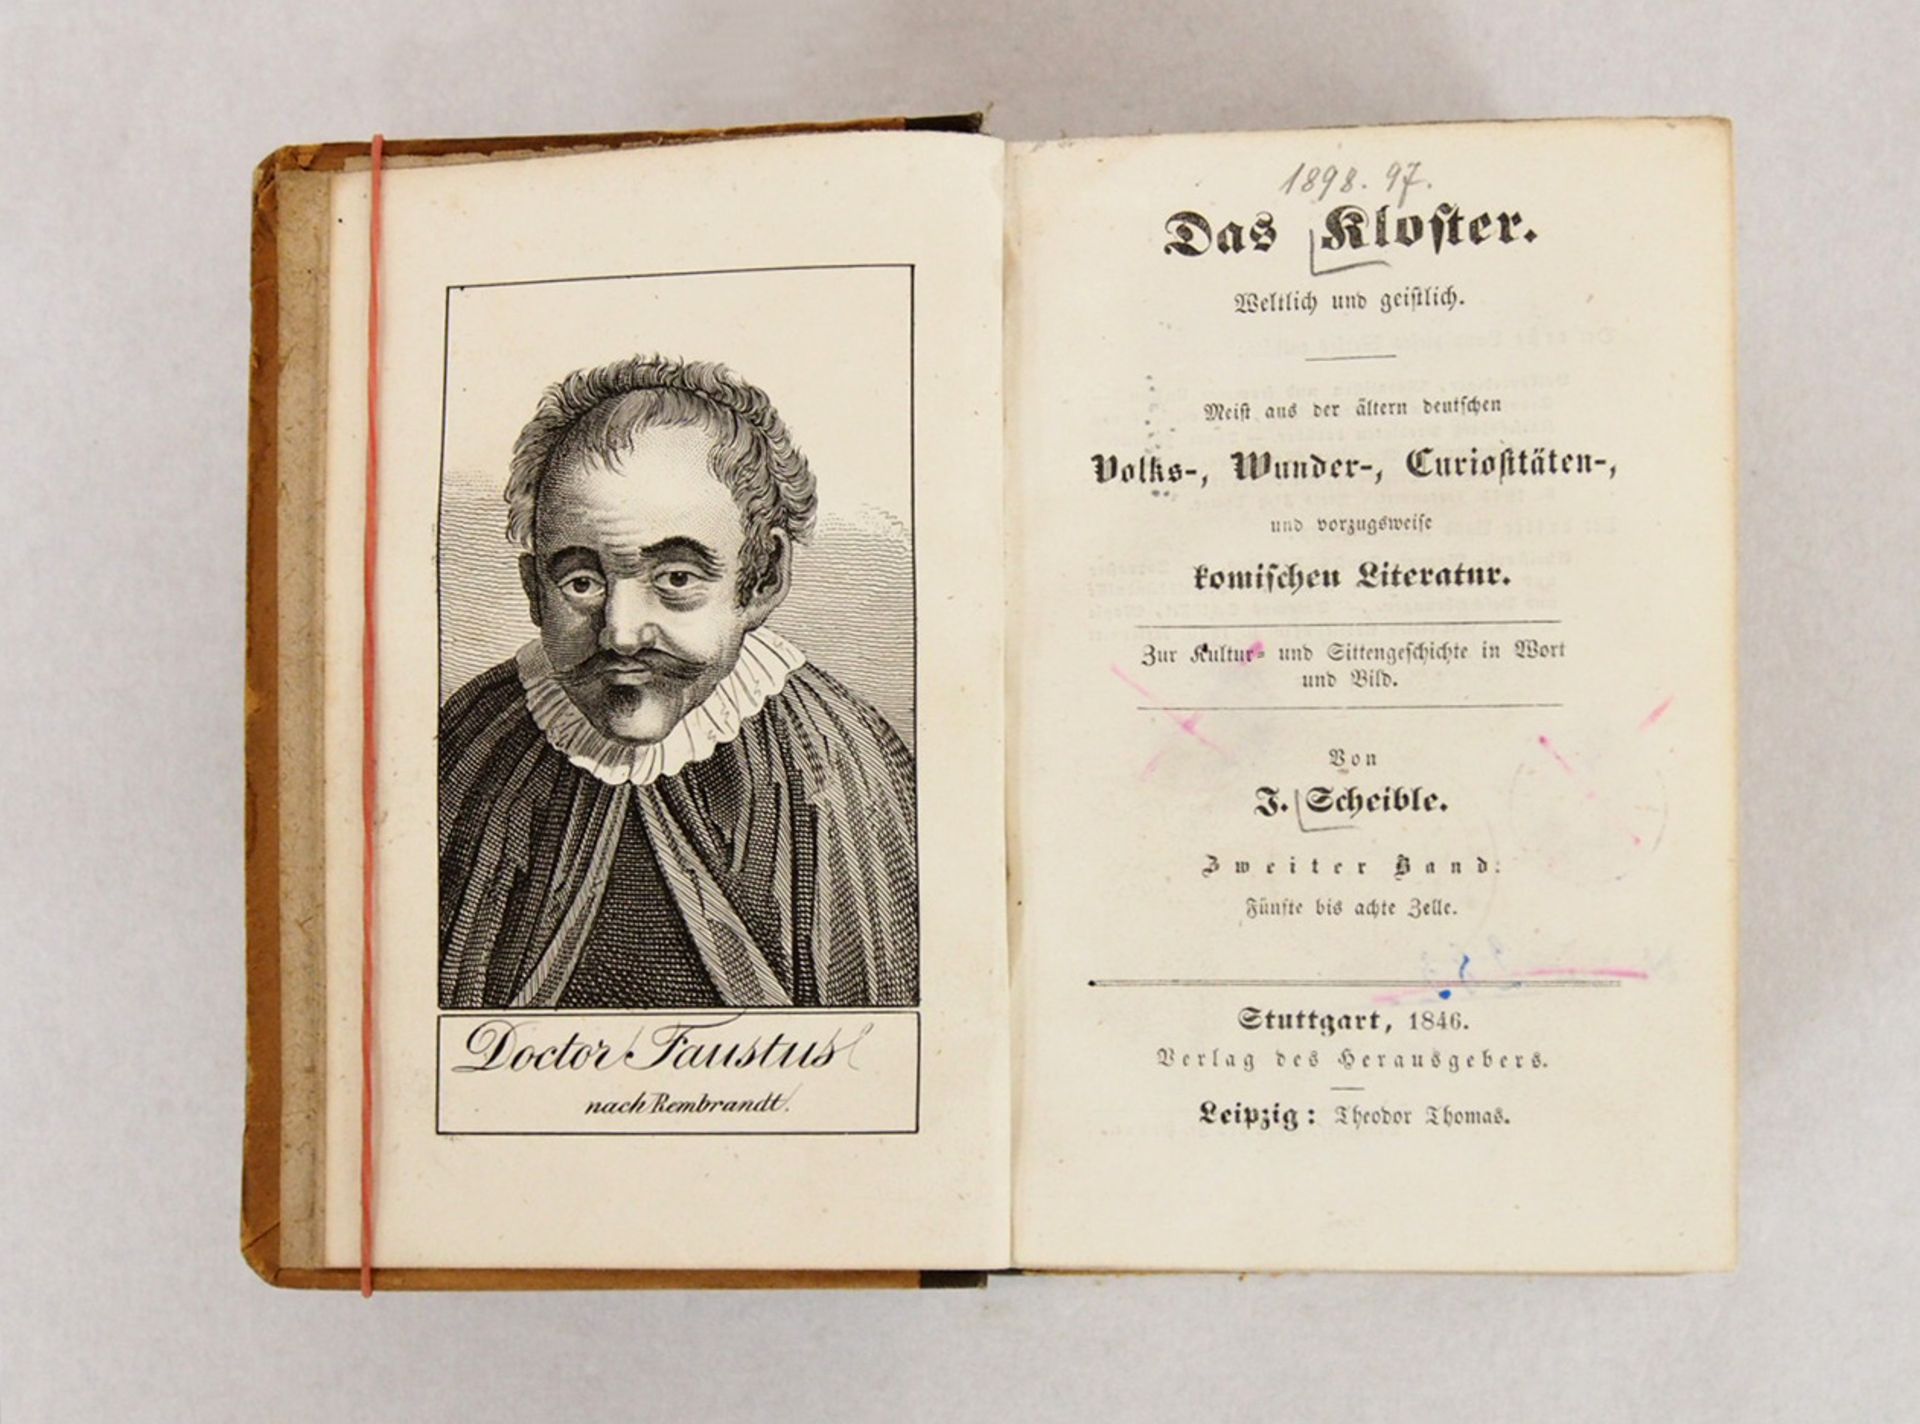 SCHEIBLE, Johann: Doctor Johann Faust